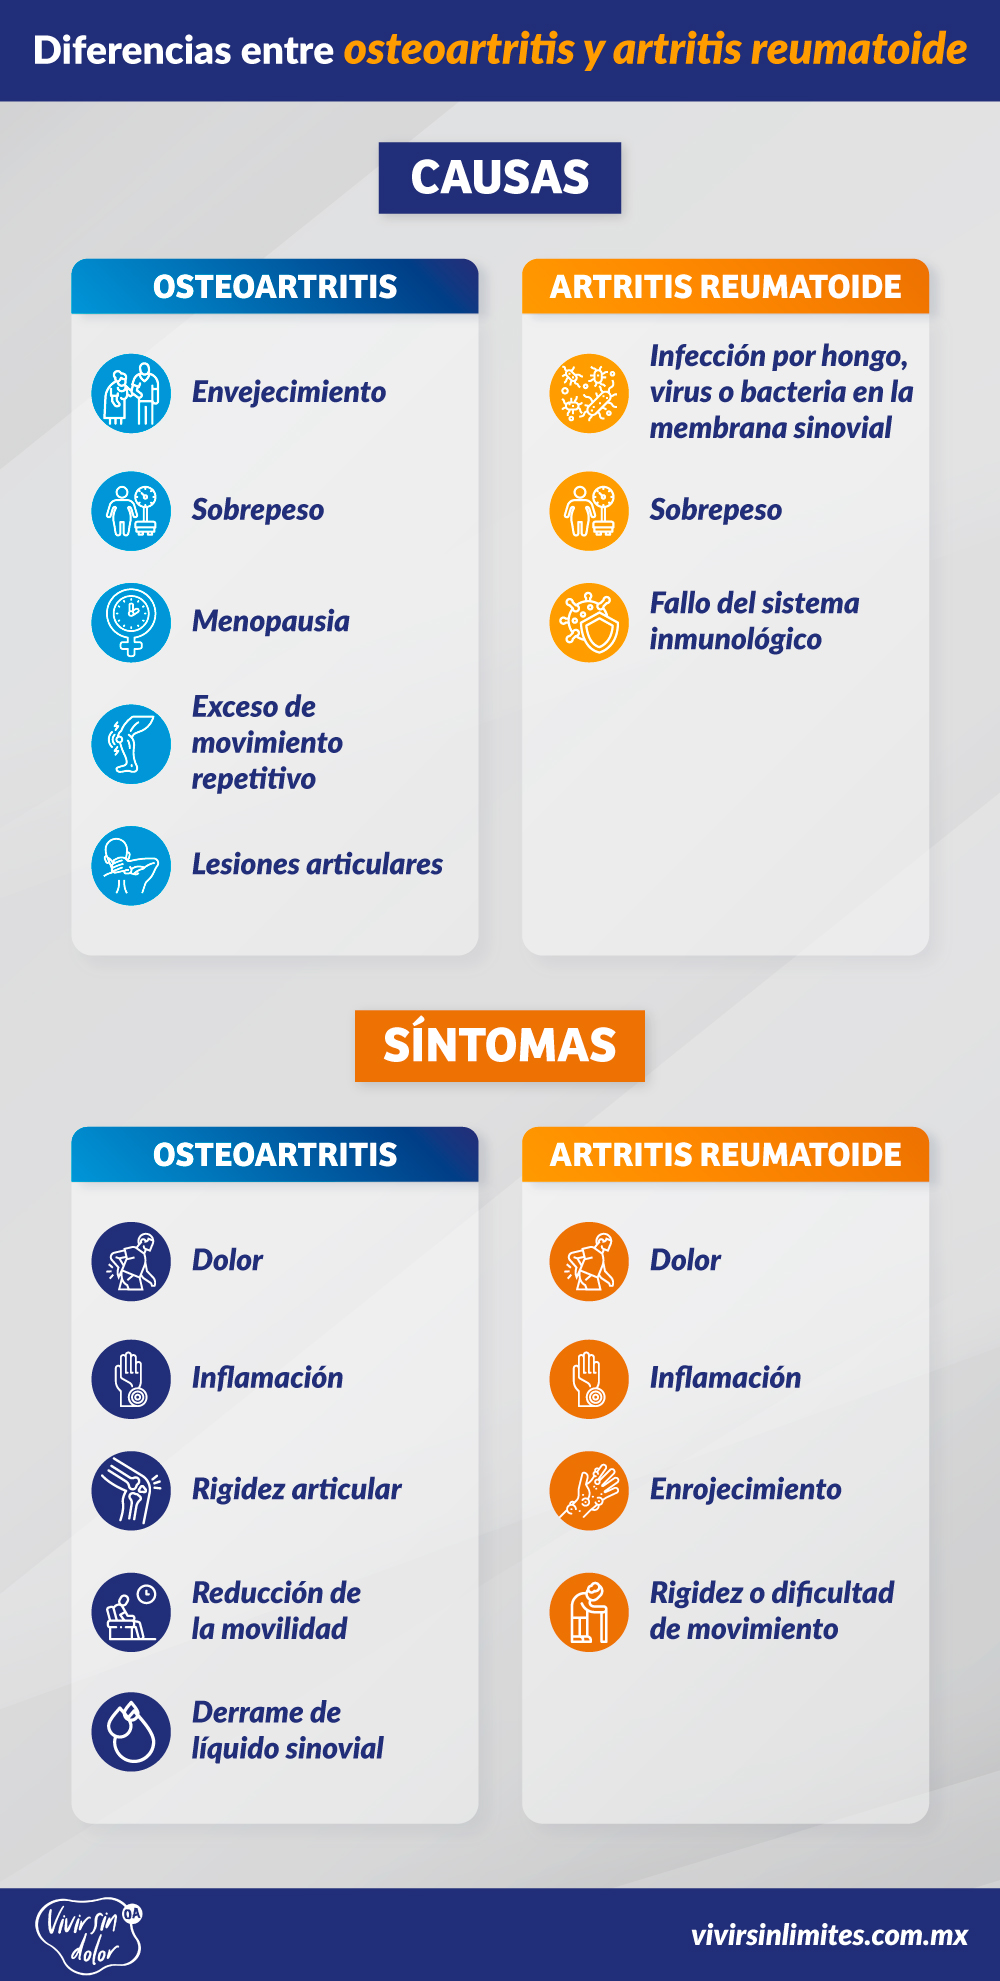 Osteoartritis y artritis reumatoide, diferencias 